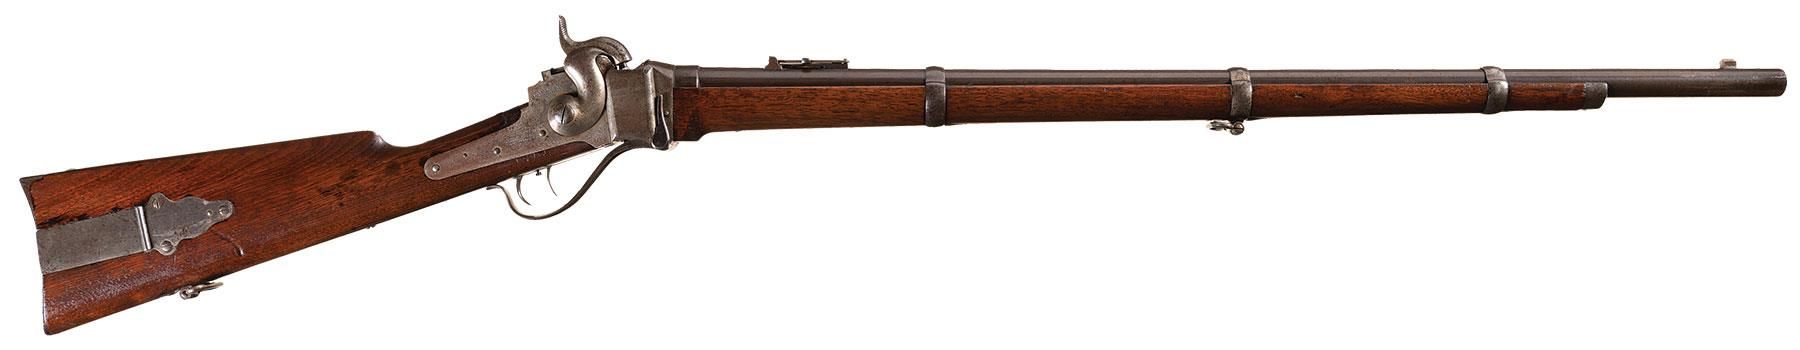 Civil War Sharps rifle